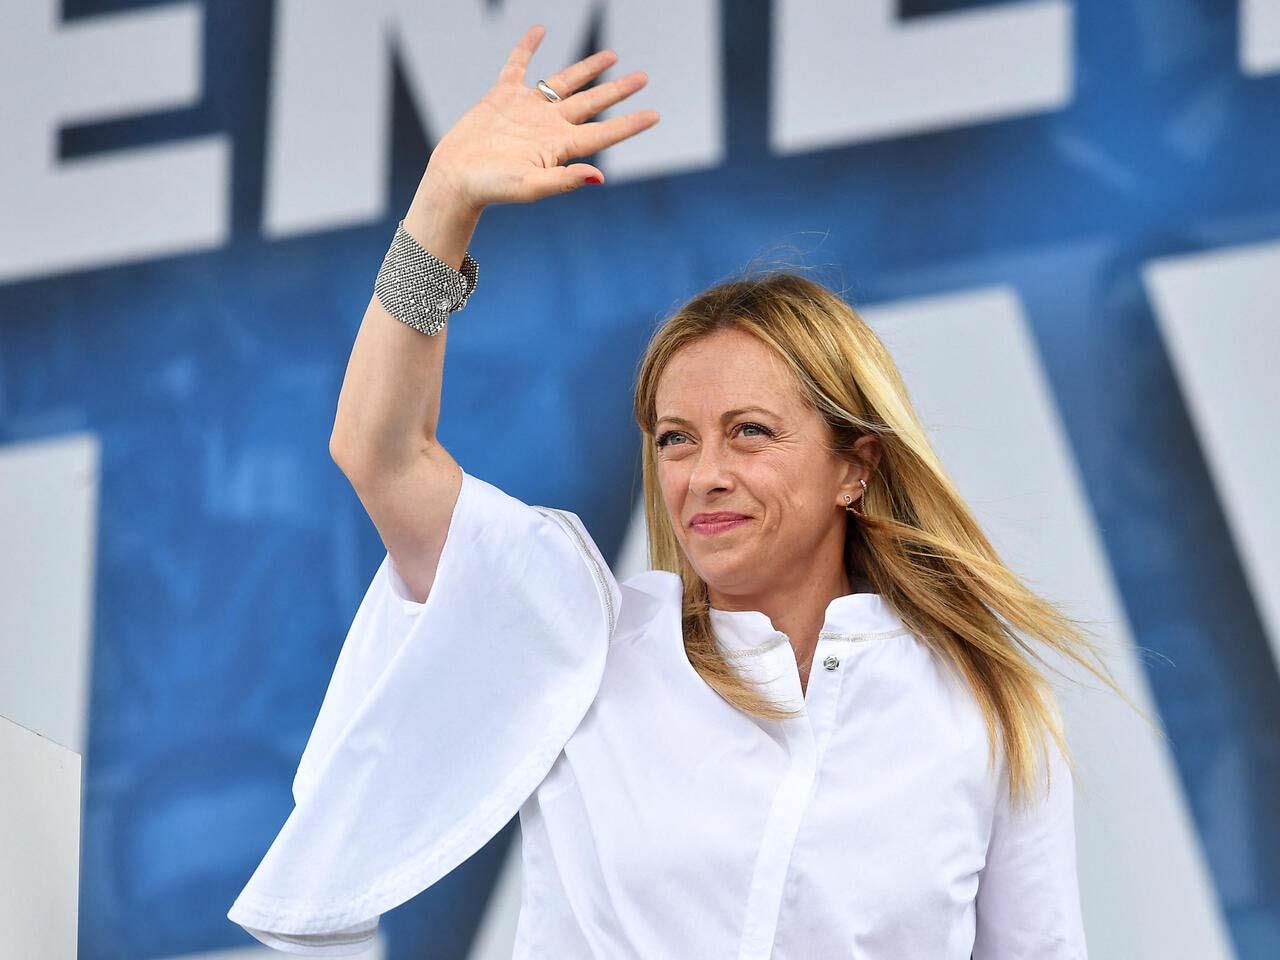 جورجيا ميلوني زعيمة حزب إخوة إيطاليا